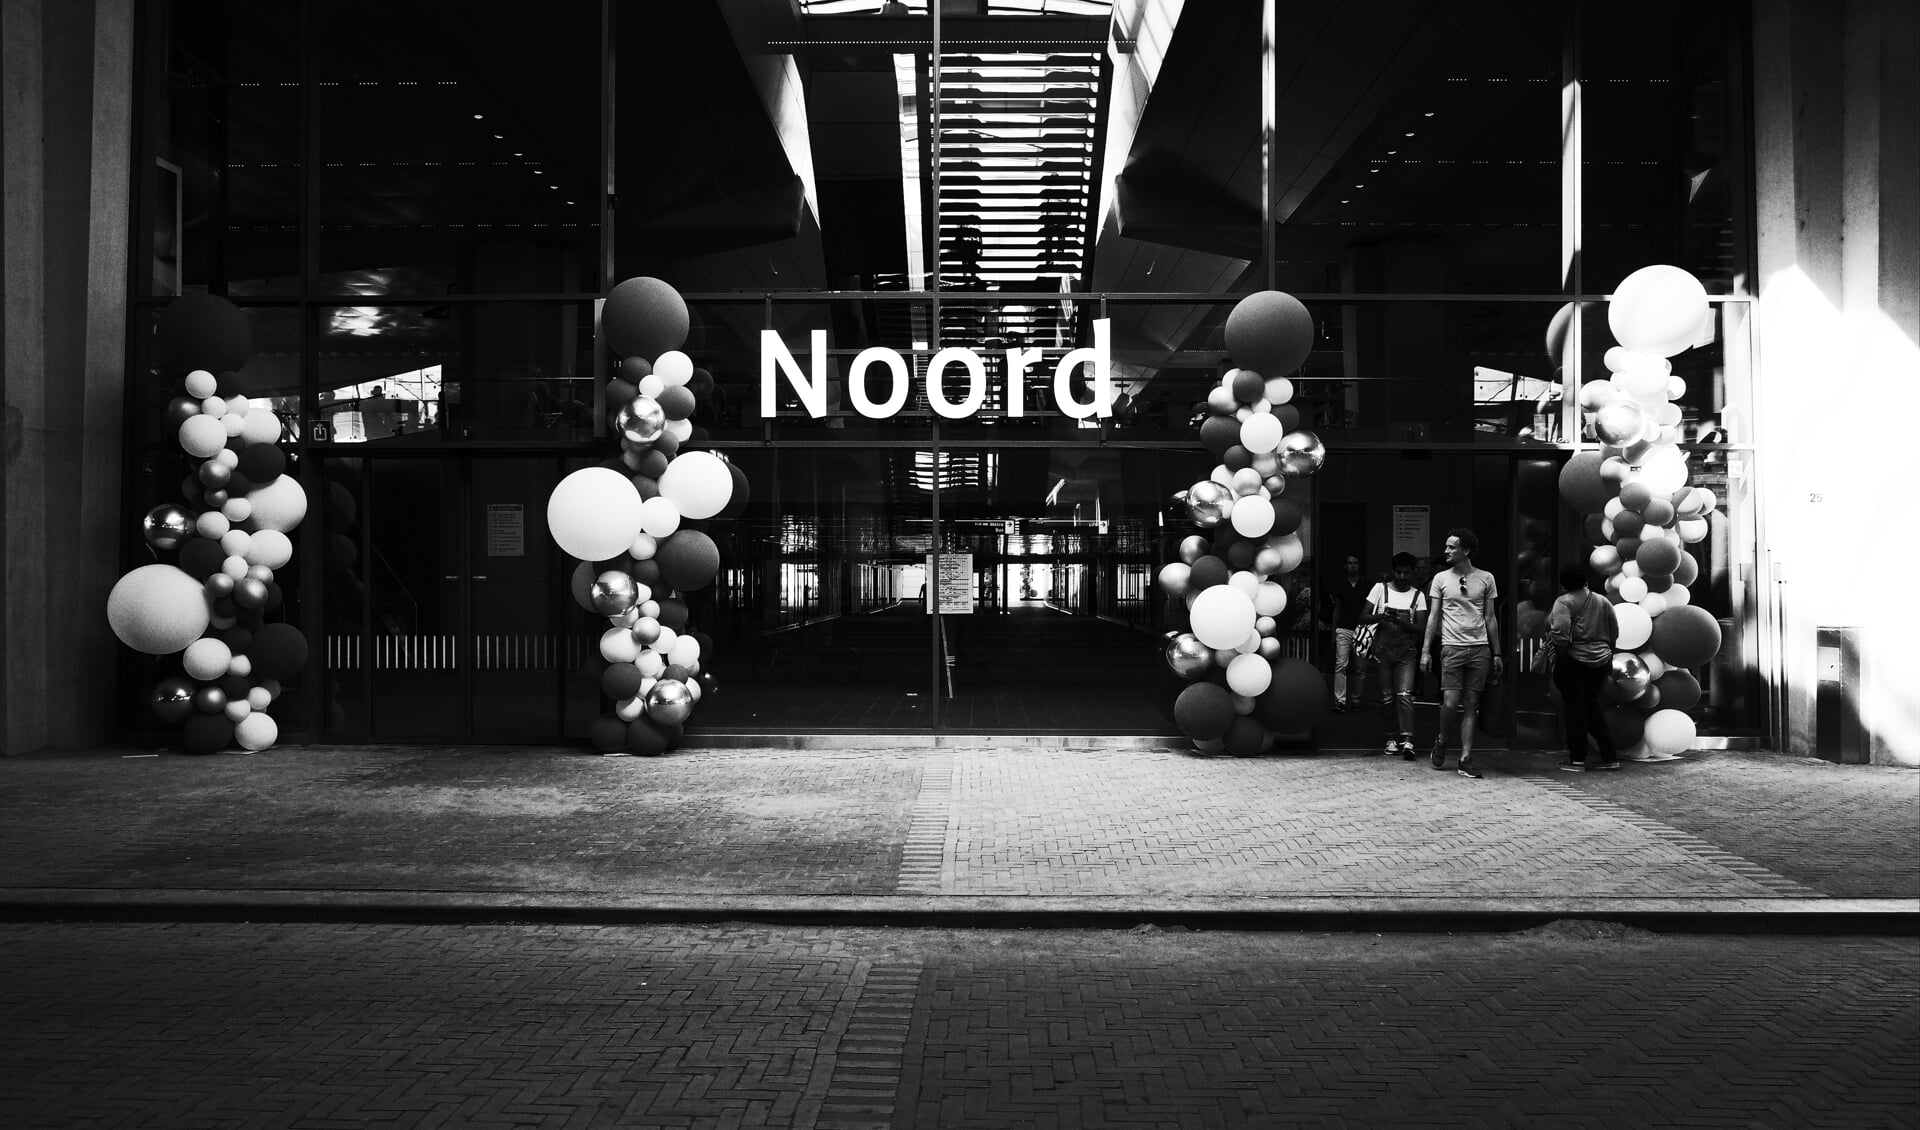 '3 jarig jubileum', Station Noord.